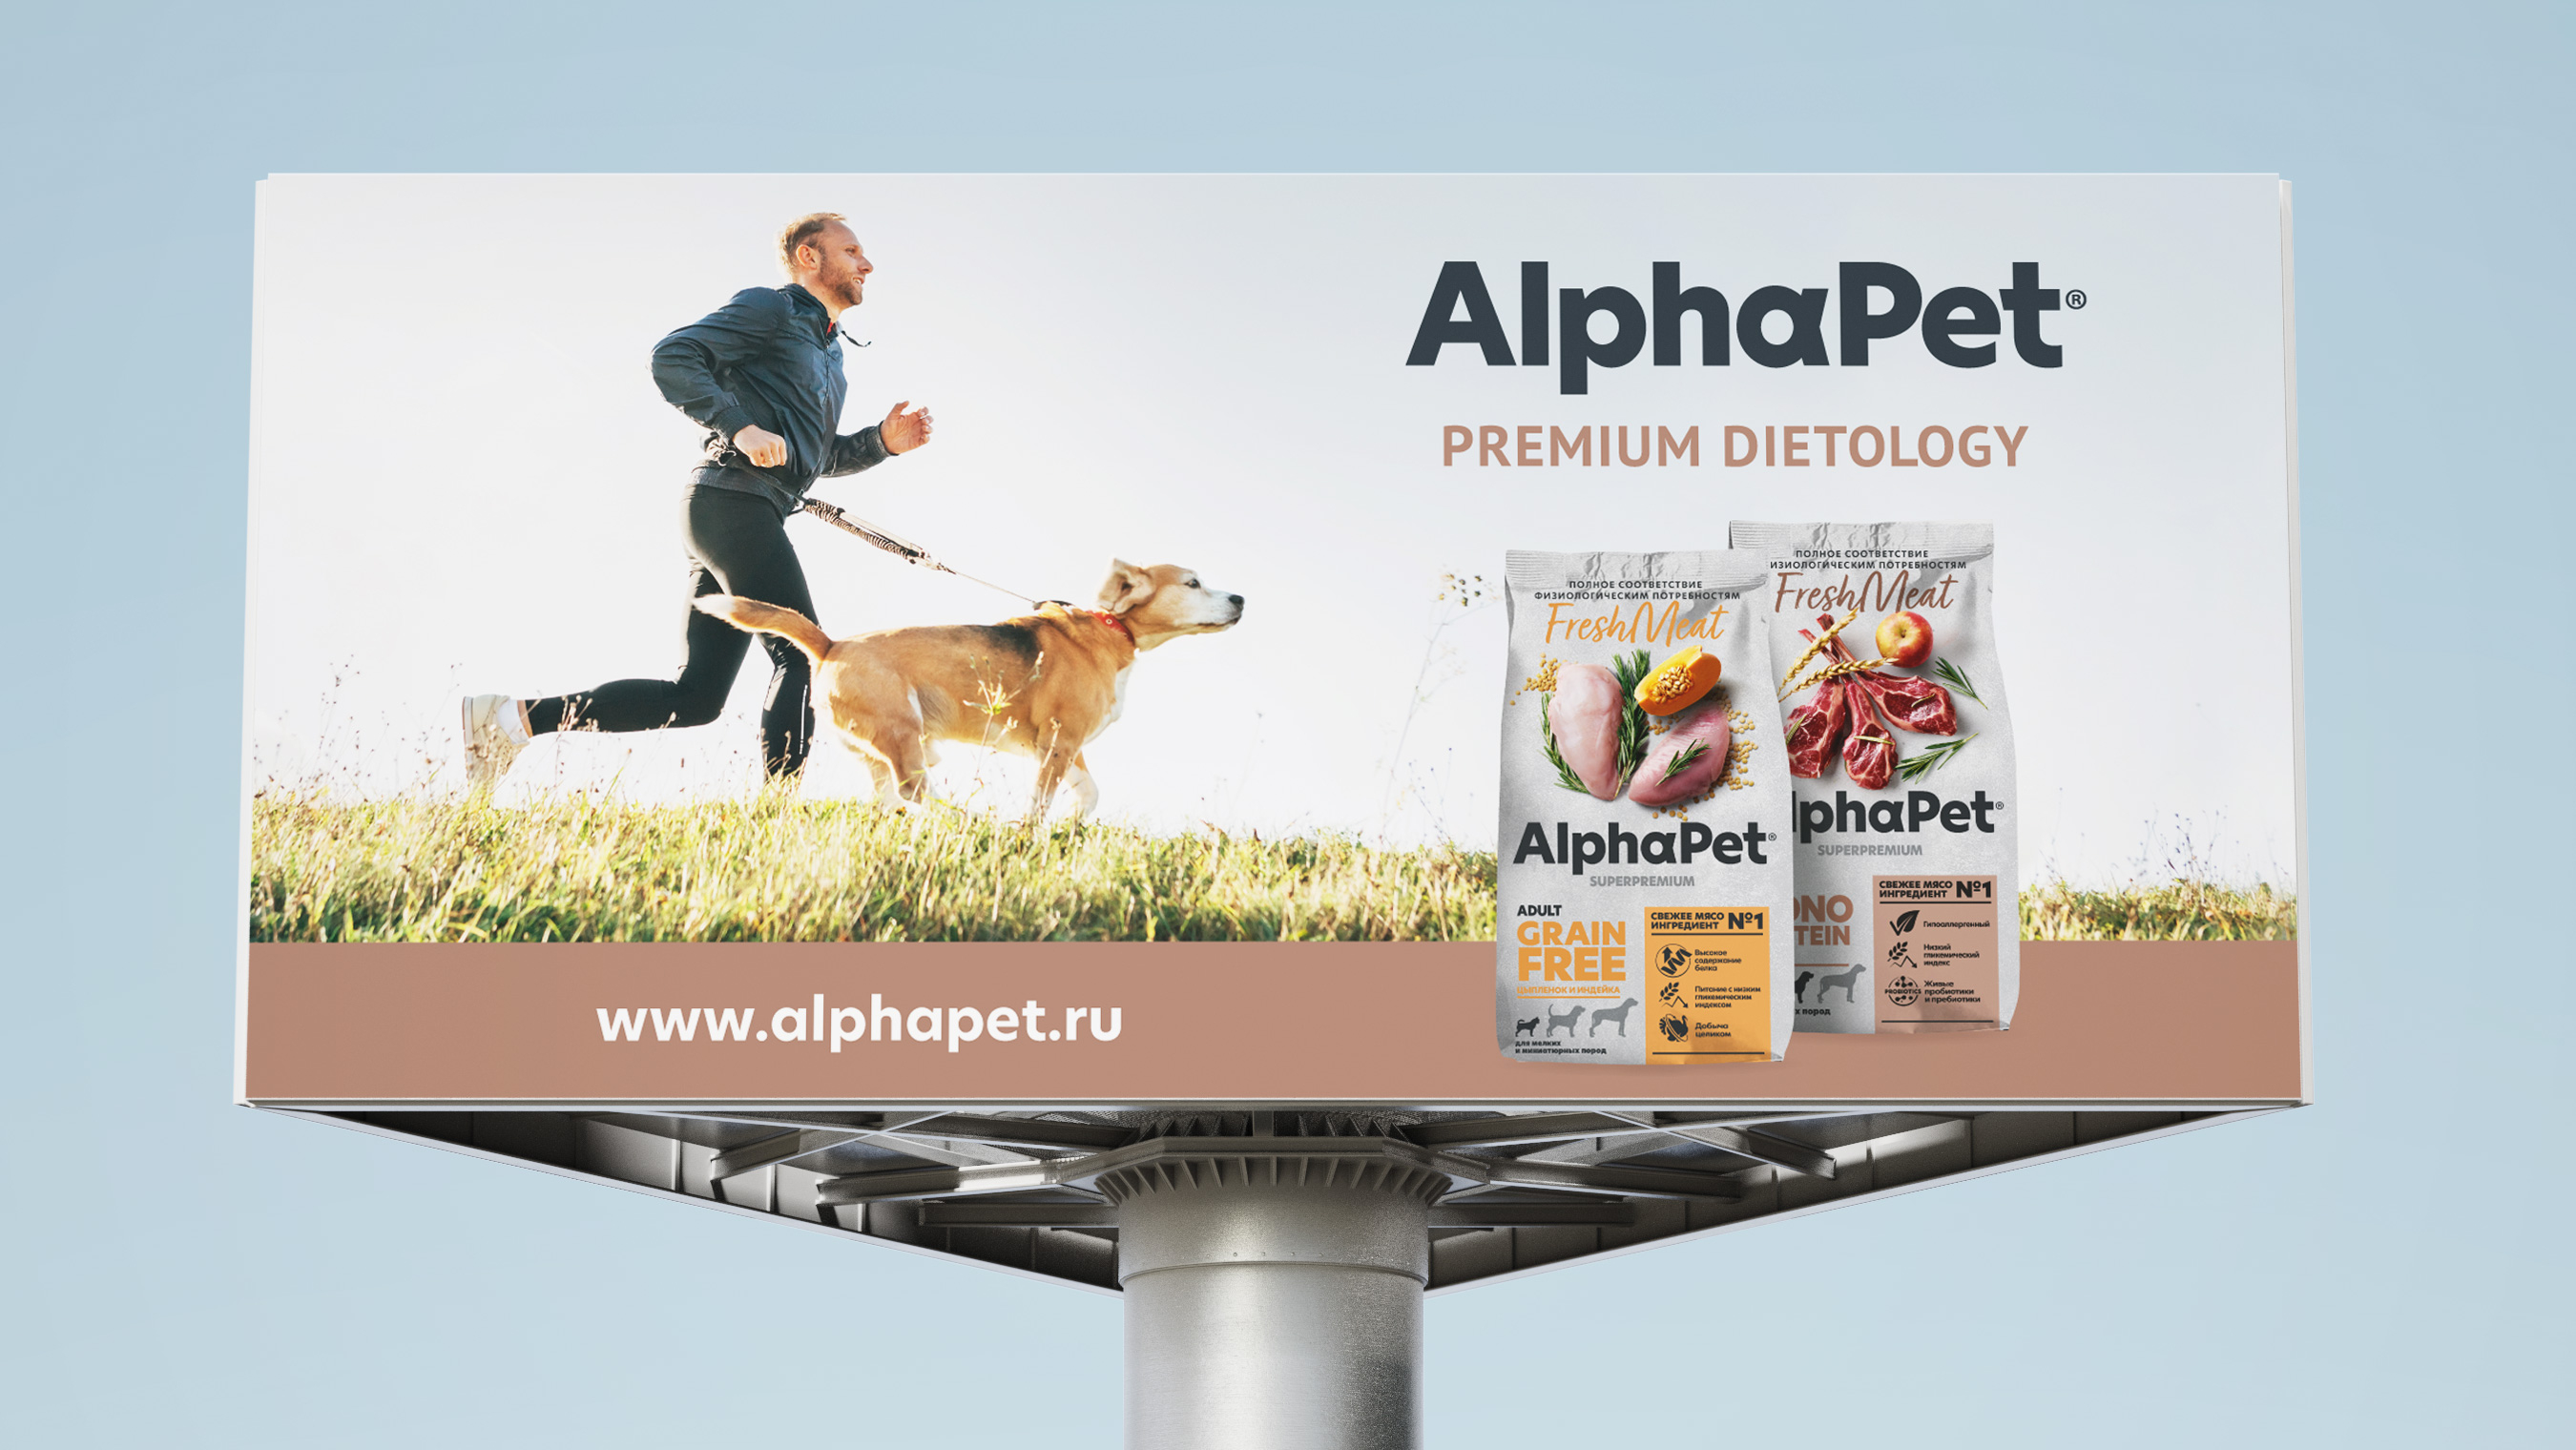 Дизайн наружной рекламы бренда AlphaPet.